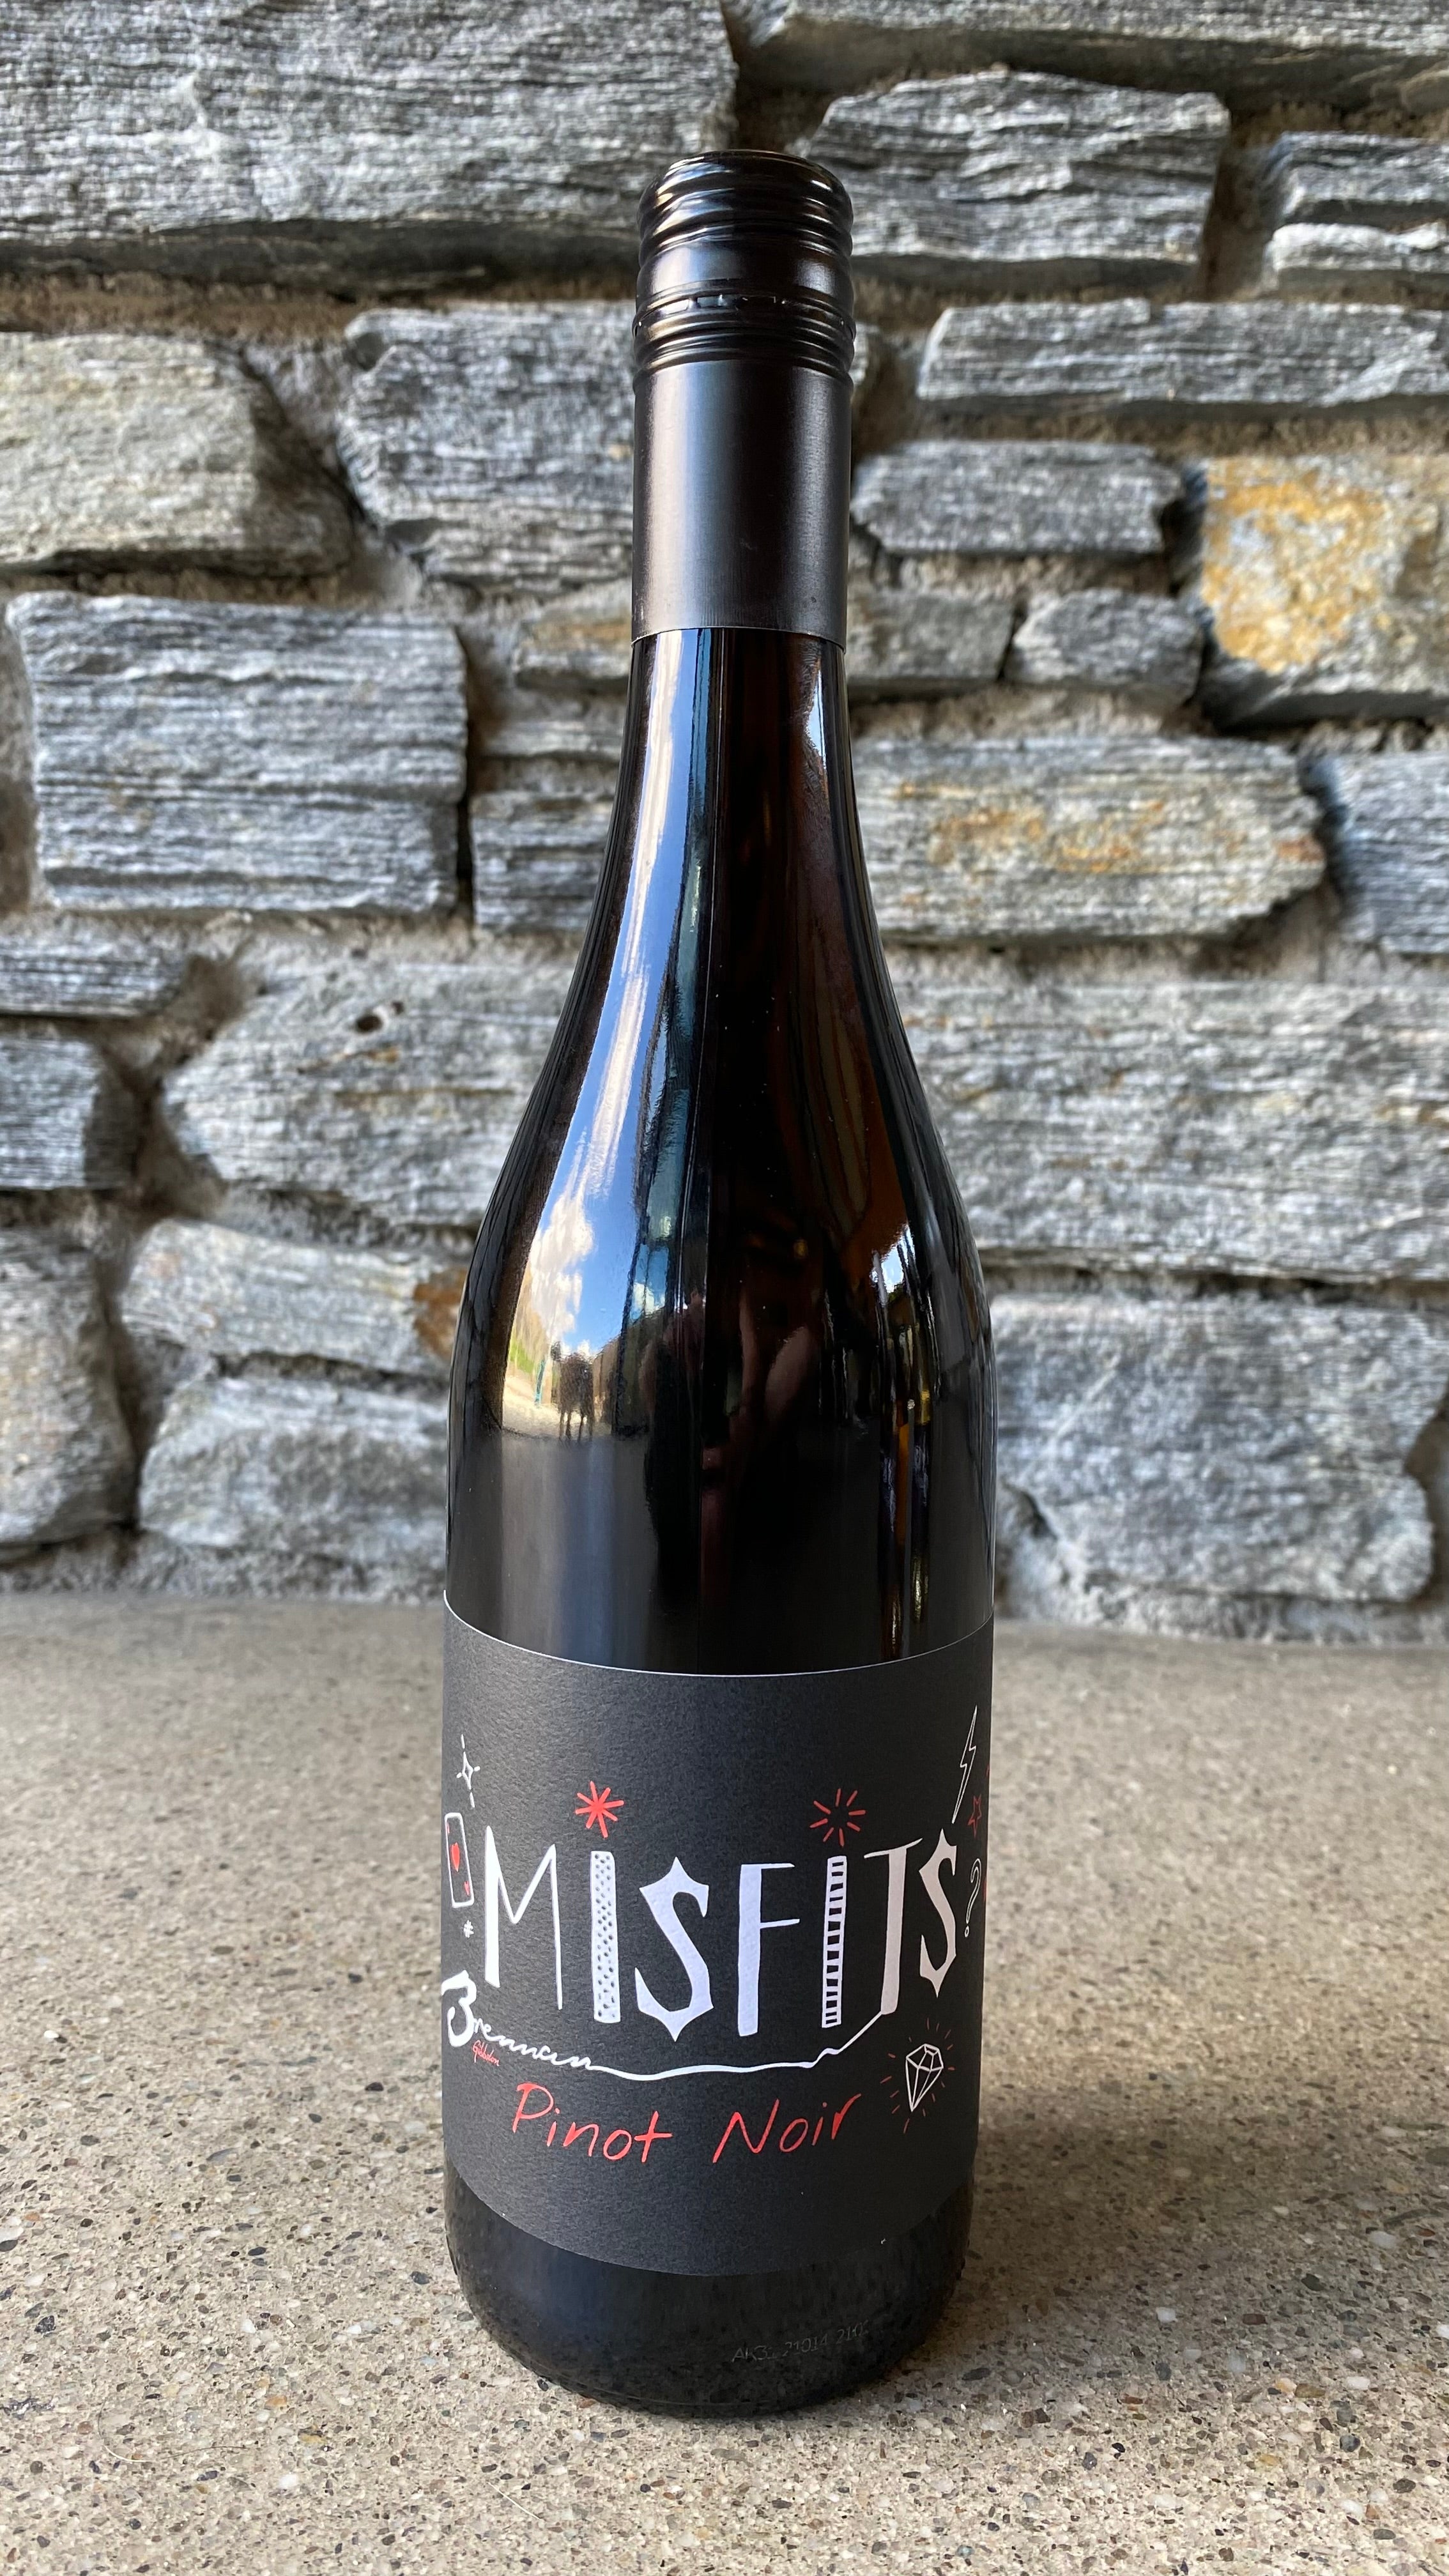 2020 Misfits Pinot Noir